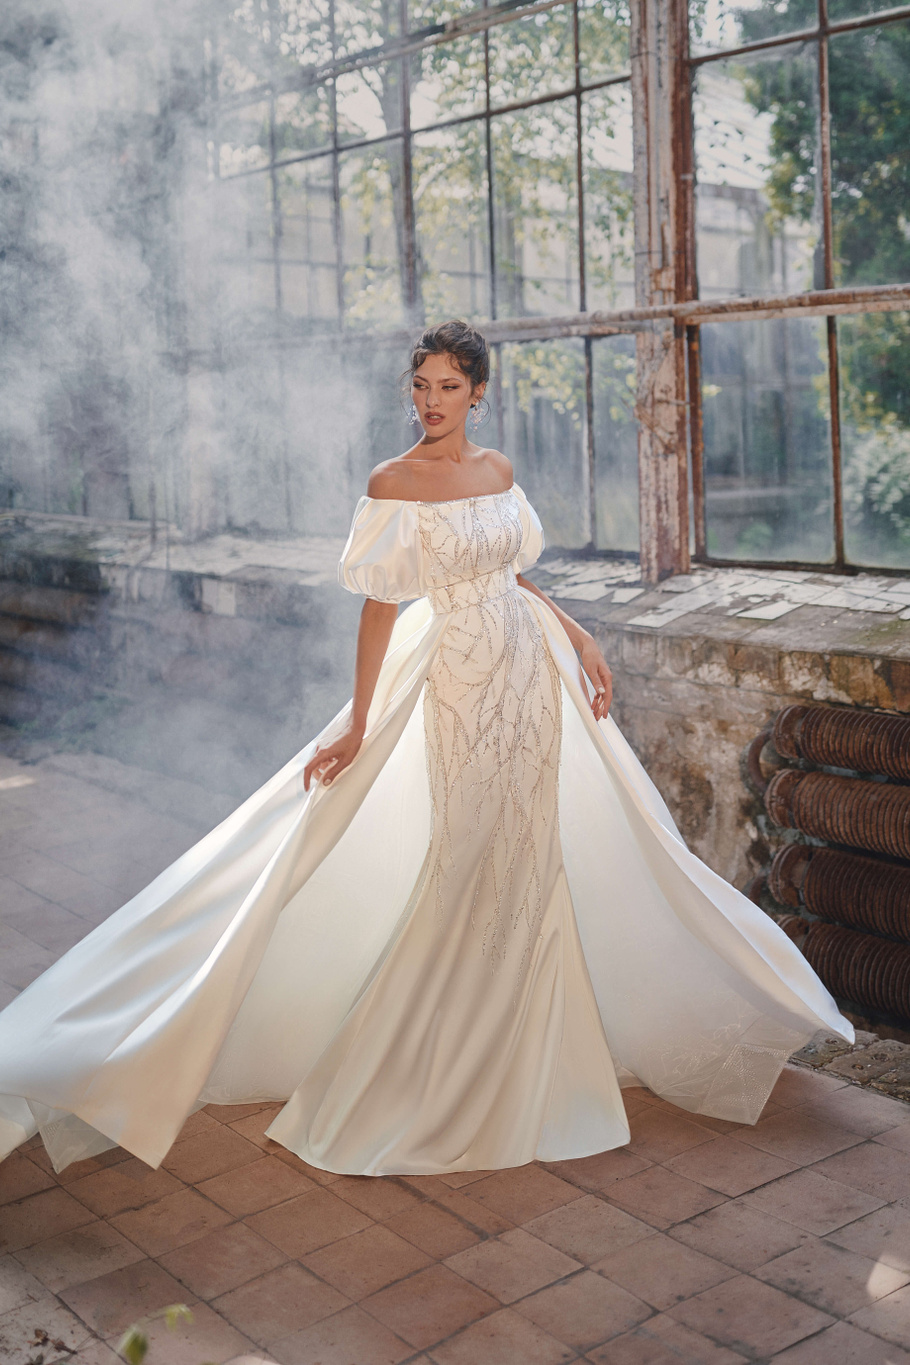 Купить свадебное платье «Ода» с кружевом Анже Этуаль из коллекции Леди Перл 2021 года в салоне «Мэри Трюфель»